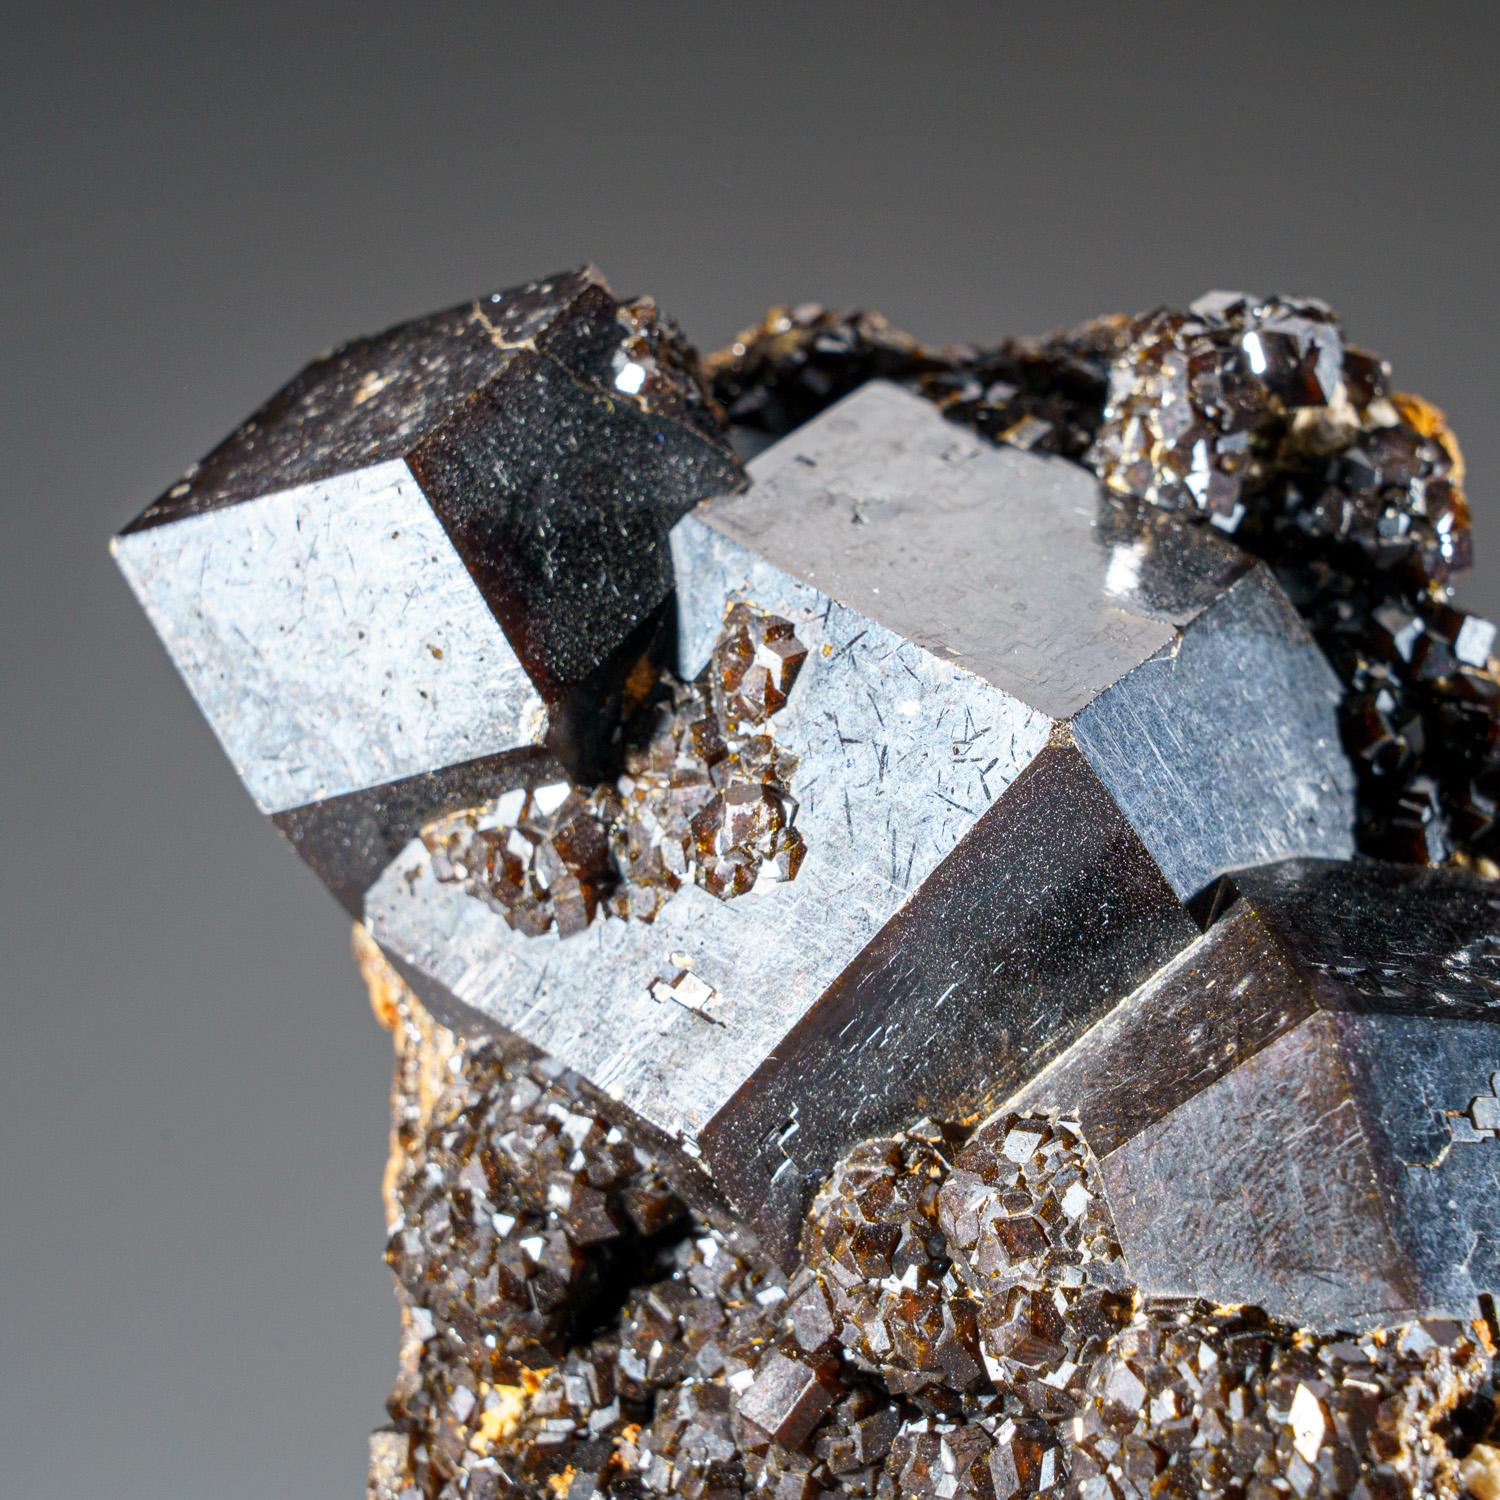 Aus der Mine Ojos Españoles (Mina La Prieta Linda), Chihuahua, Mexiko

Große Ansammlung von glänzenden schwarzen Melanit-Granatkristallen auf massiver Melanit-Matrix. Auch Andradit-Granat genannt. Dies ist ein schönes Exemplar in